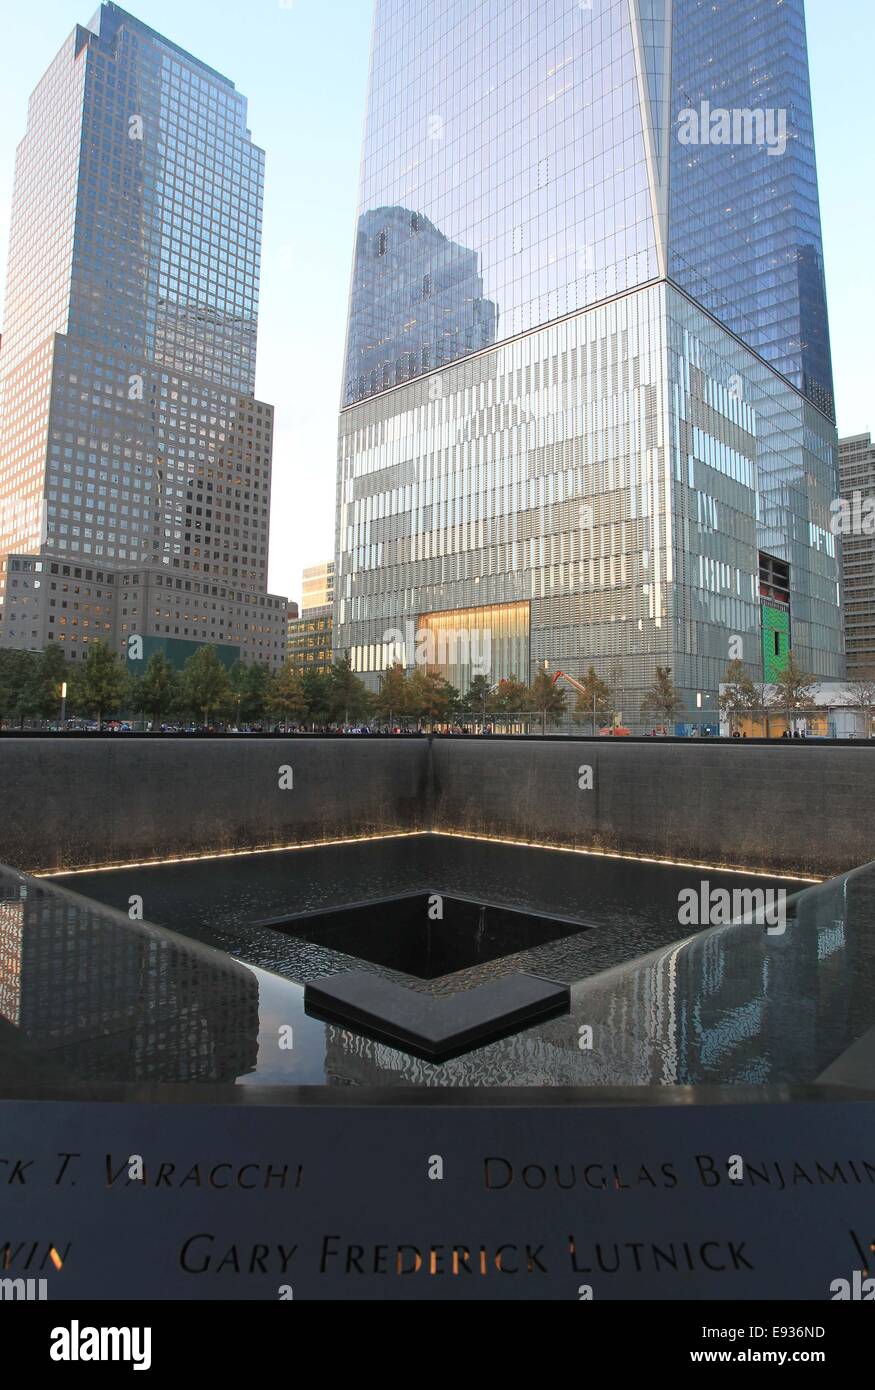 (141018) -- NEW YORK, le 18 octobre 2014 (Xinhua) -- La tour Sud Piscine Memorial est vu à New York, États-Unis, 17 octobre 2014. One World Trade Center, le plus haut édifice de l'United States, entre dans la phase finale de construction pour l'ouverture prévue au début de 2015. (Xinhua/Cheng Li)bxq) Banque D'Images